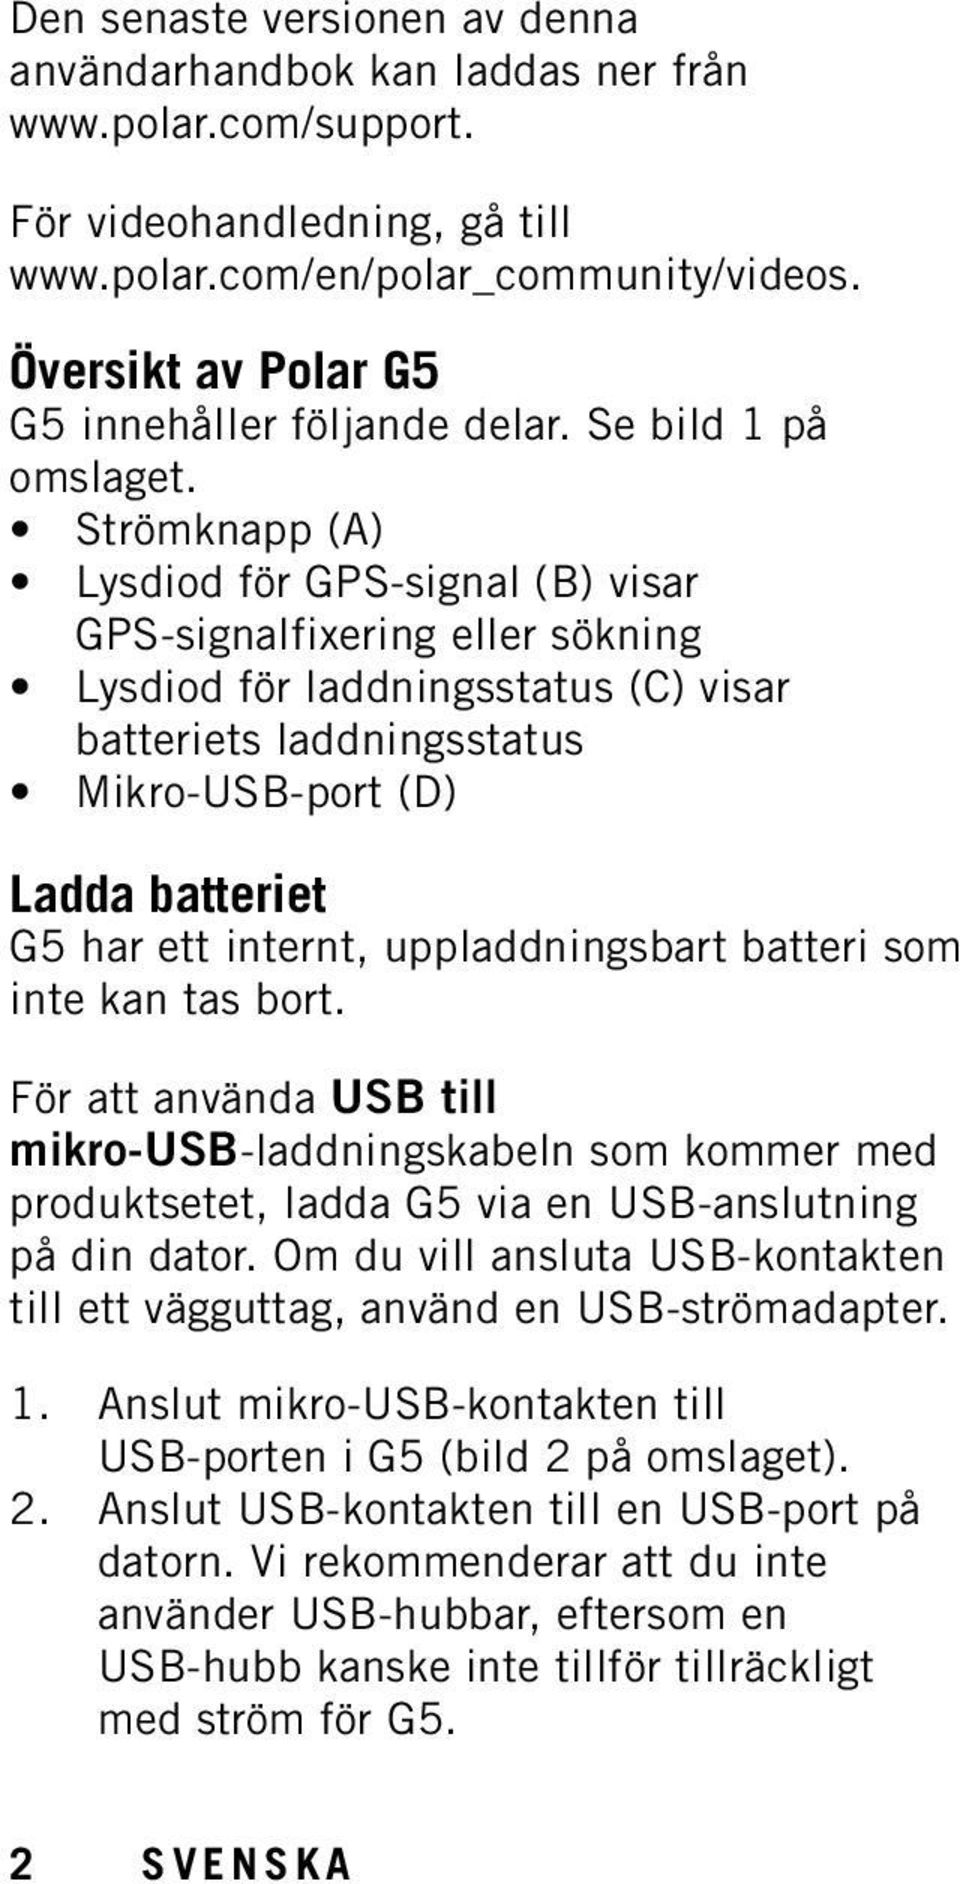 Strömknapp (A) Lysdiod för GPS-signal (B) visar GPS-signalfixering eller sökning Lysdiod för laddningsstatus (C) visar batteriets laddningsstatus Mikro-USB-port (D) Ladda batteriet G5 har ett